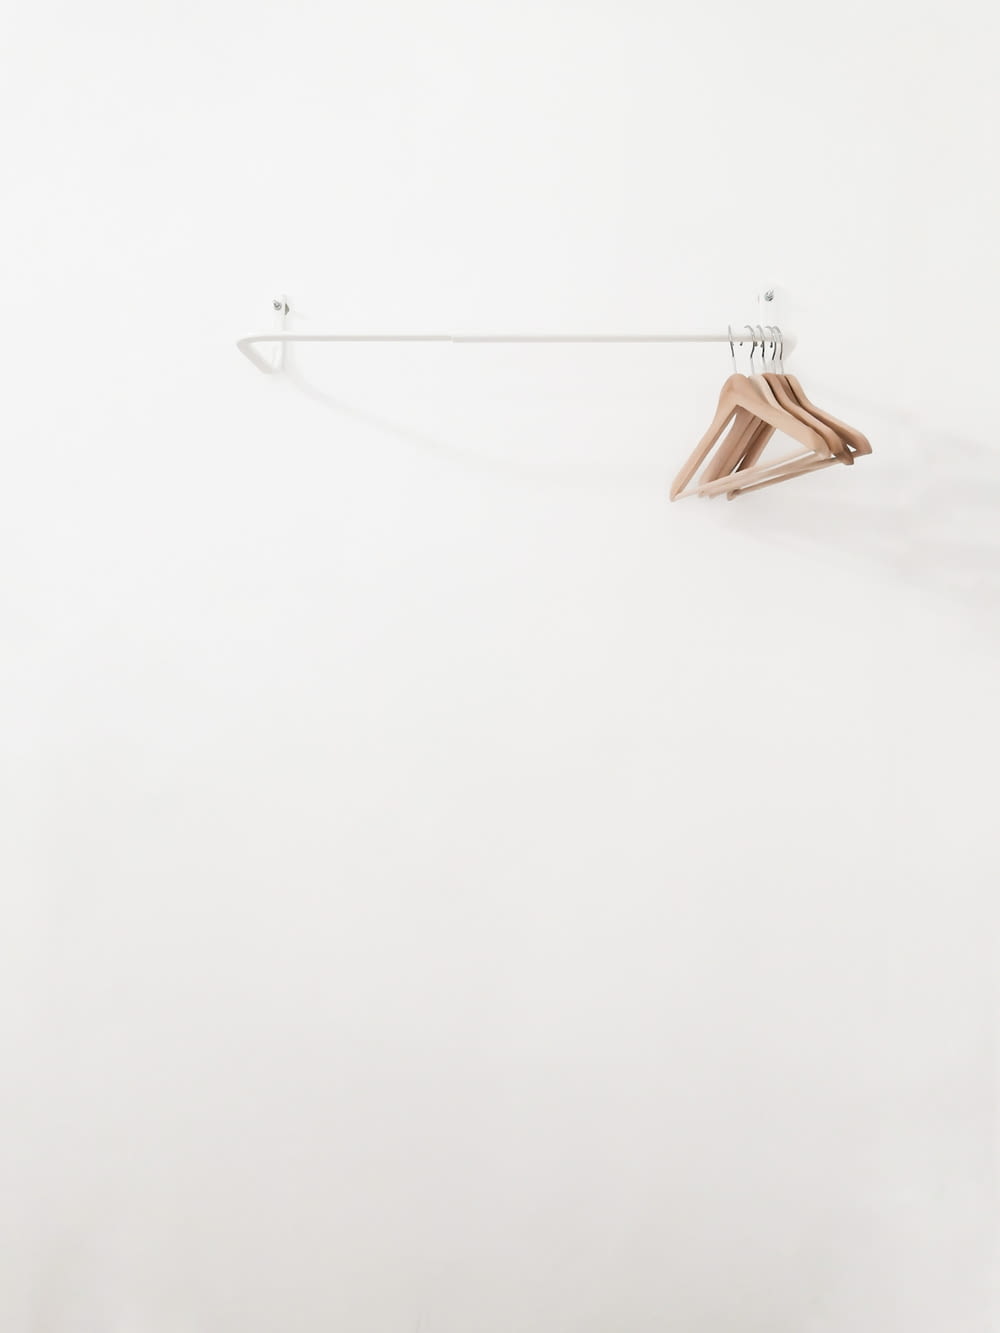 beige wooden clothes hangers